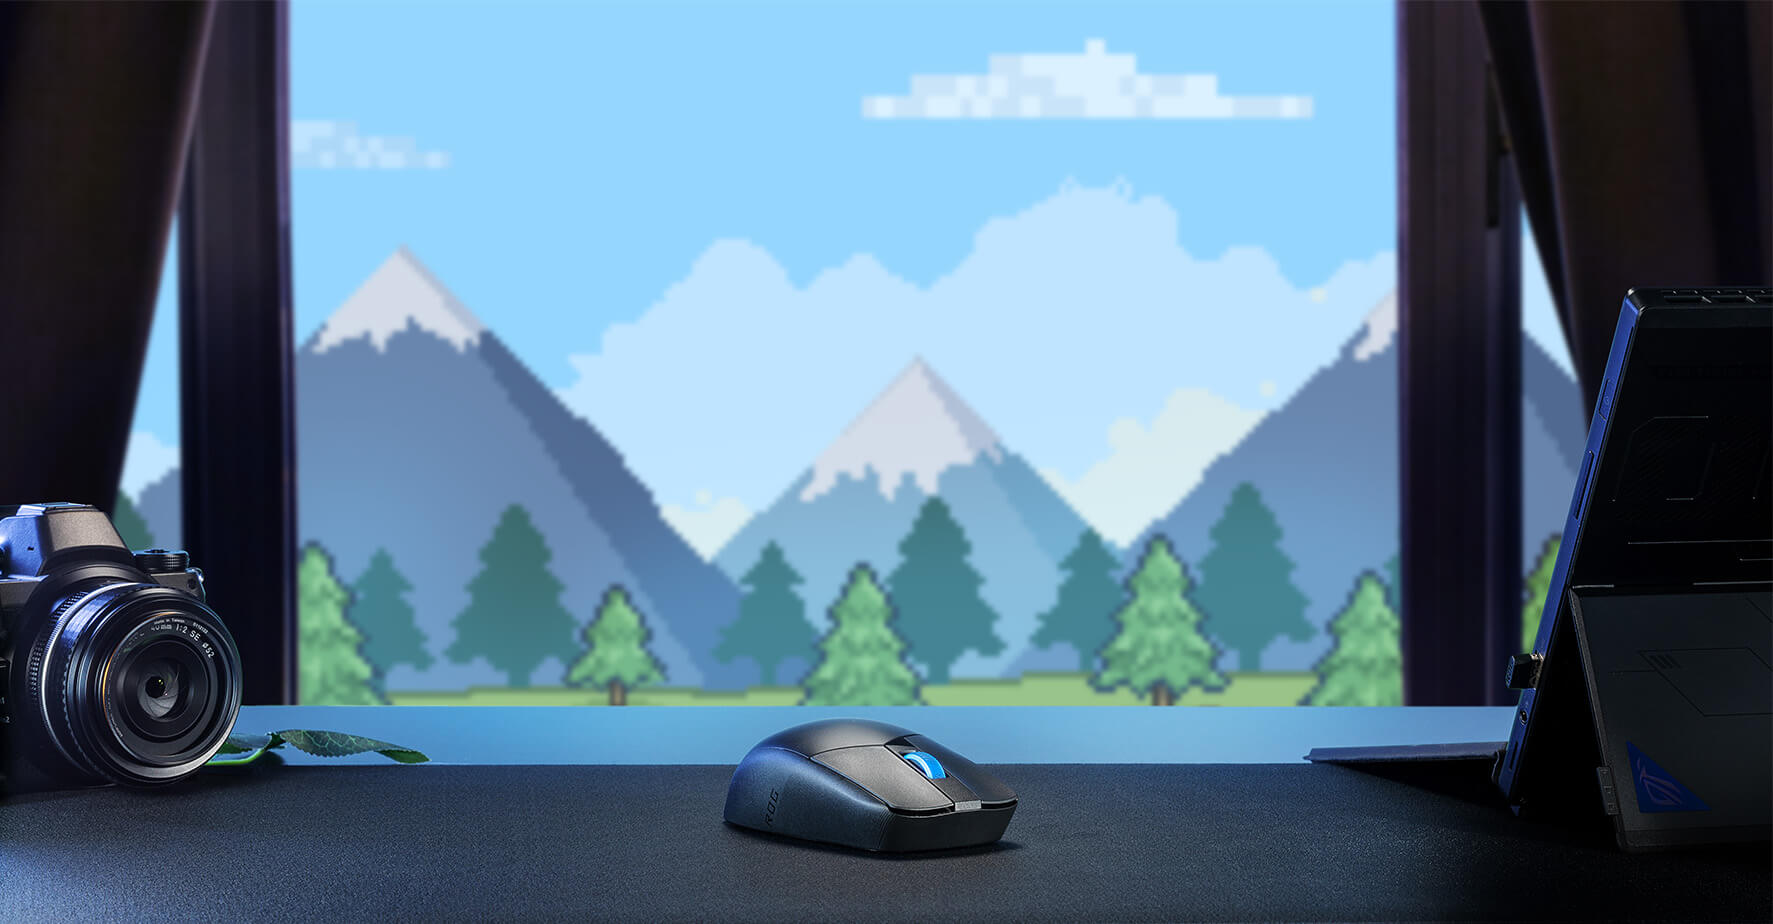 De ROG Strix Impact III Wireless op een tafel tegen een blauwe bergachtige achtergrond 